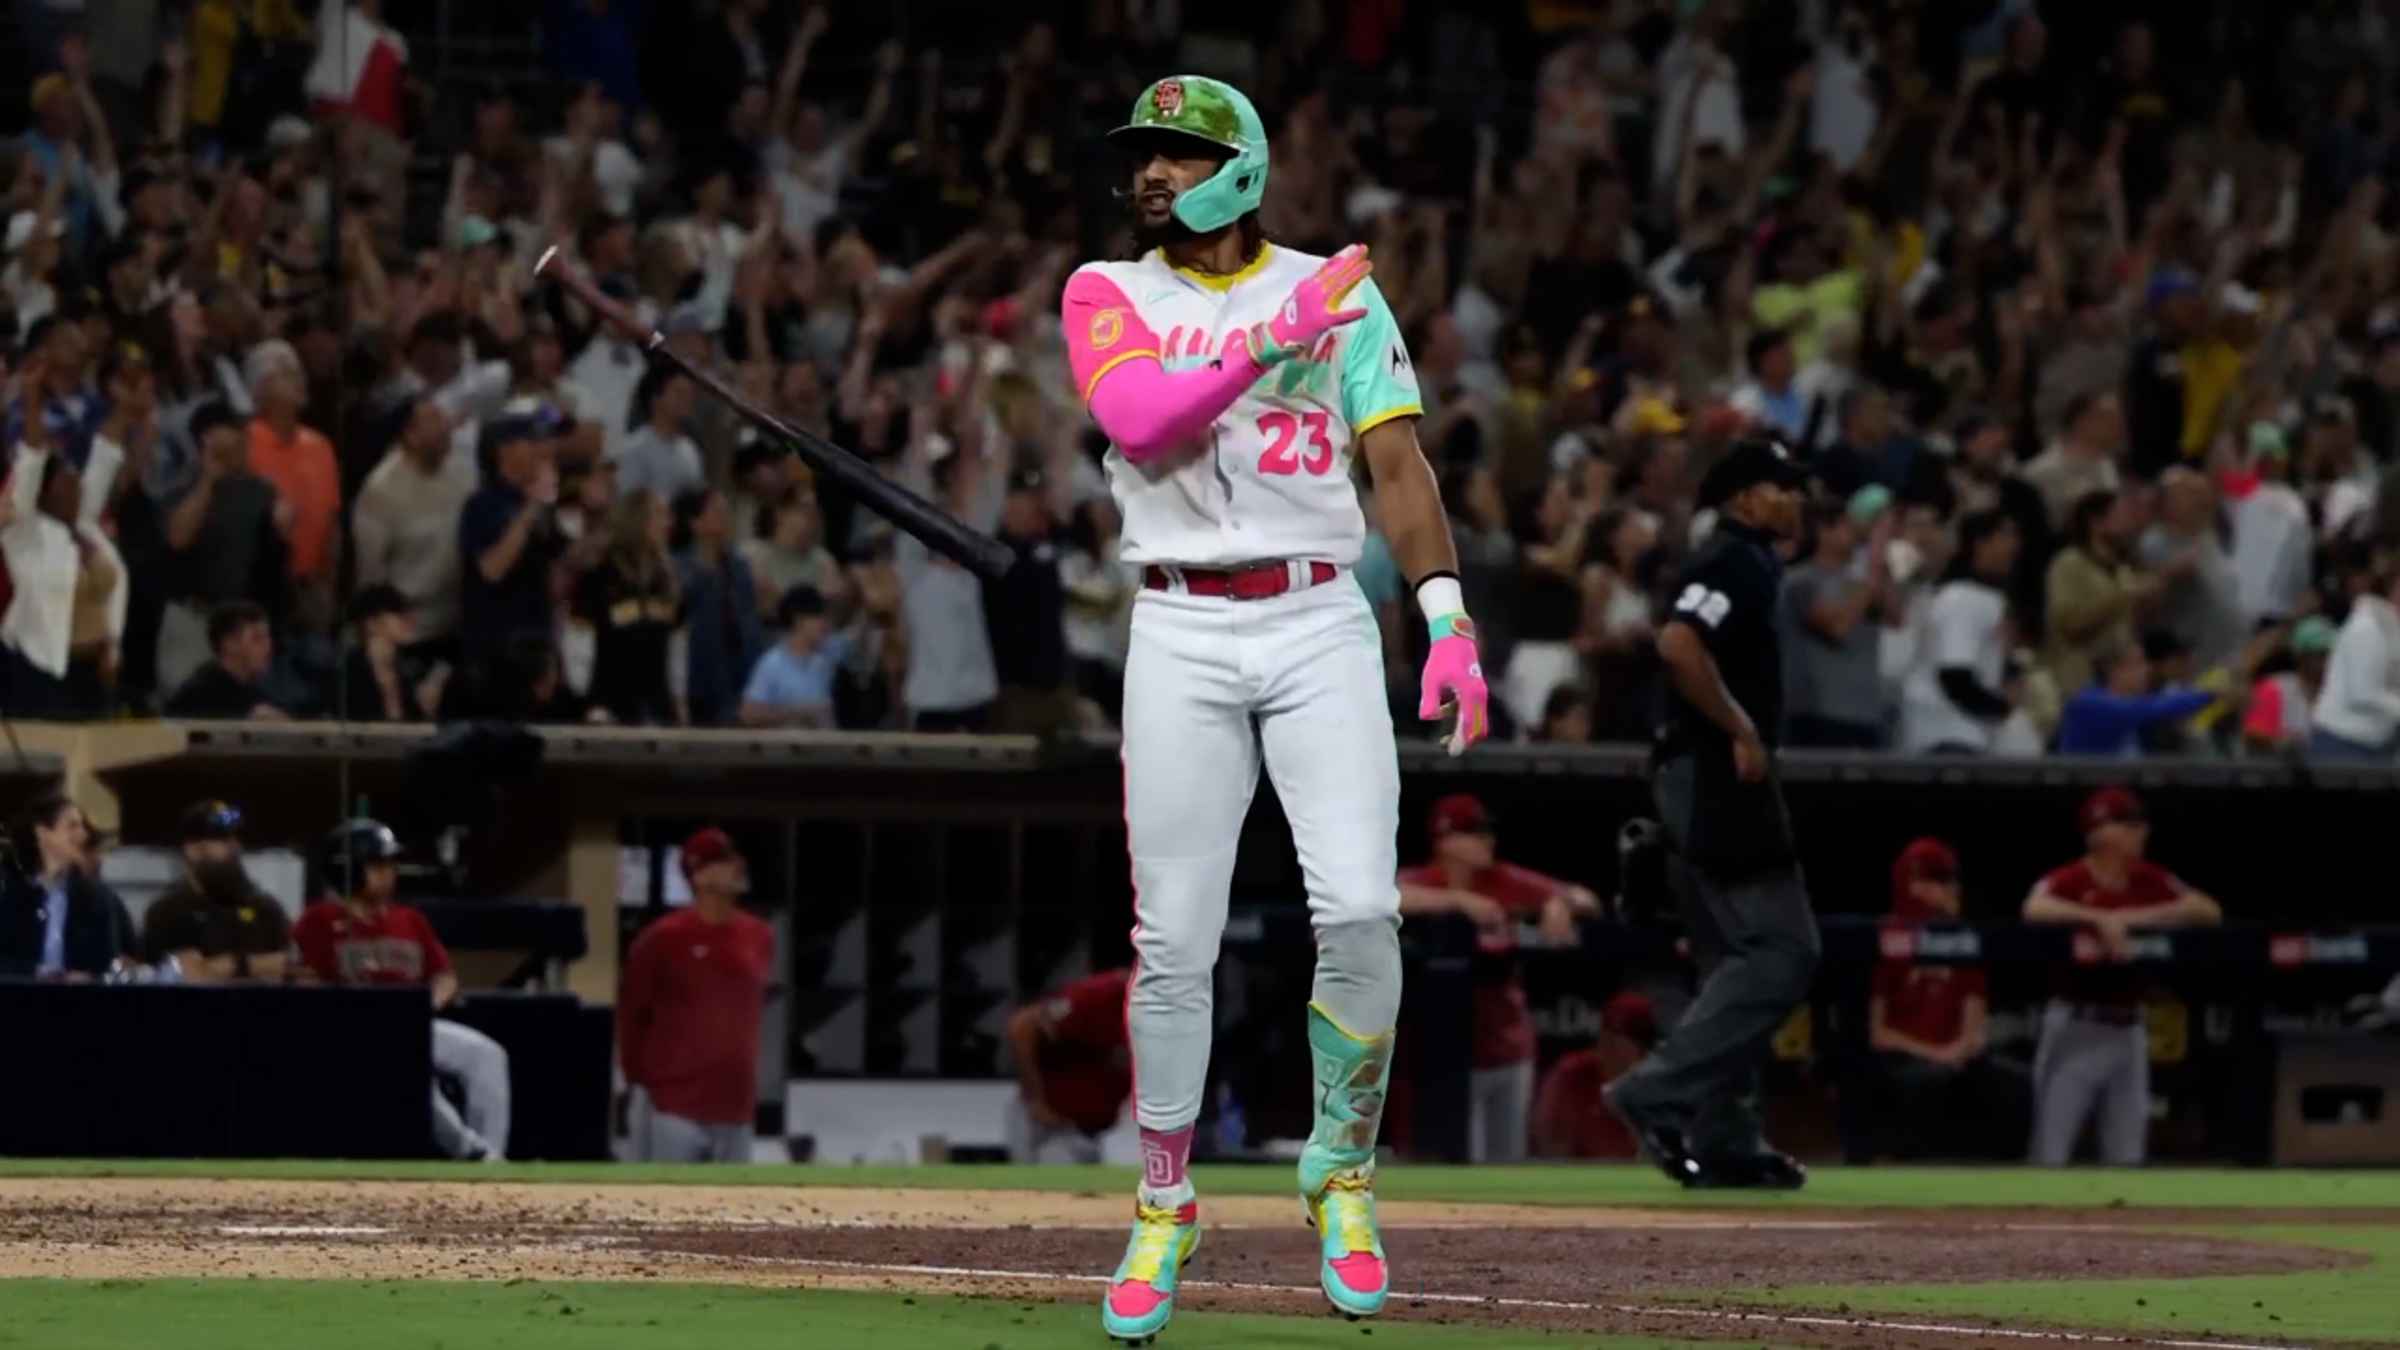 Fernando Tatis Jr. blasts a homer, then unleashes an epic bat flip